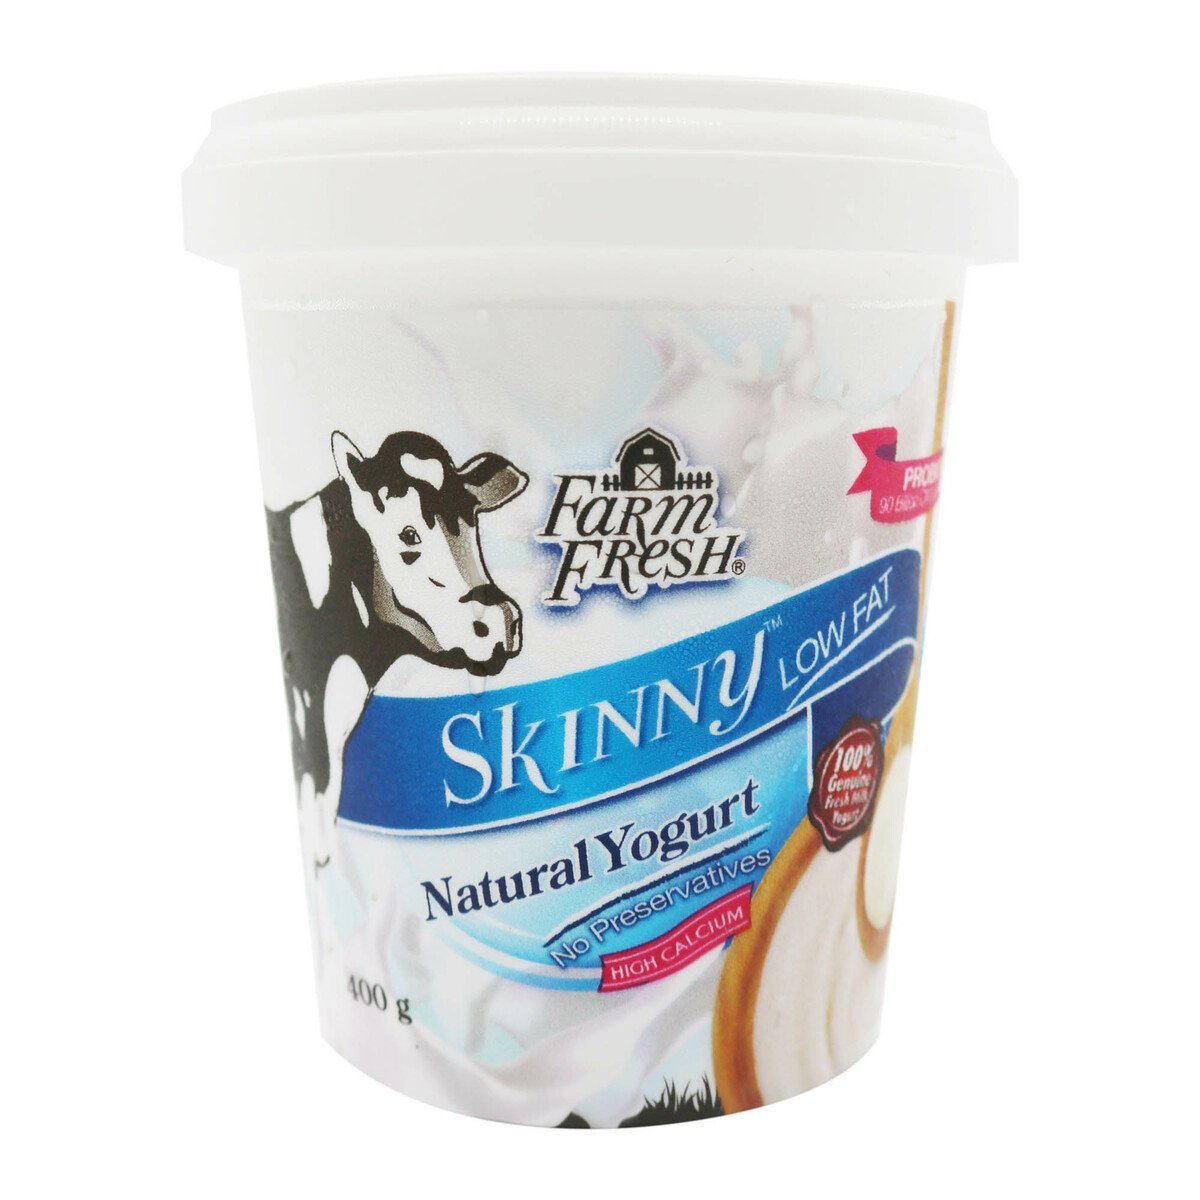 Farm Fresh Skinny Yogurt Tub 400g